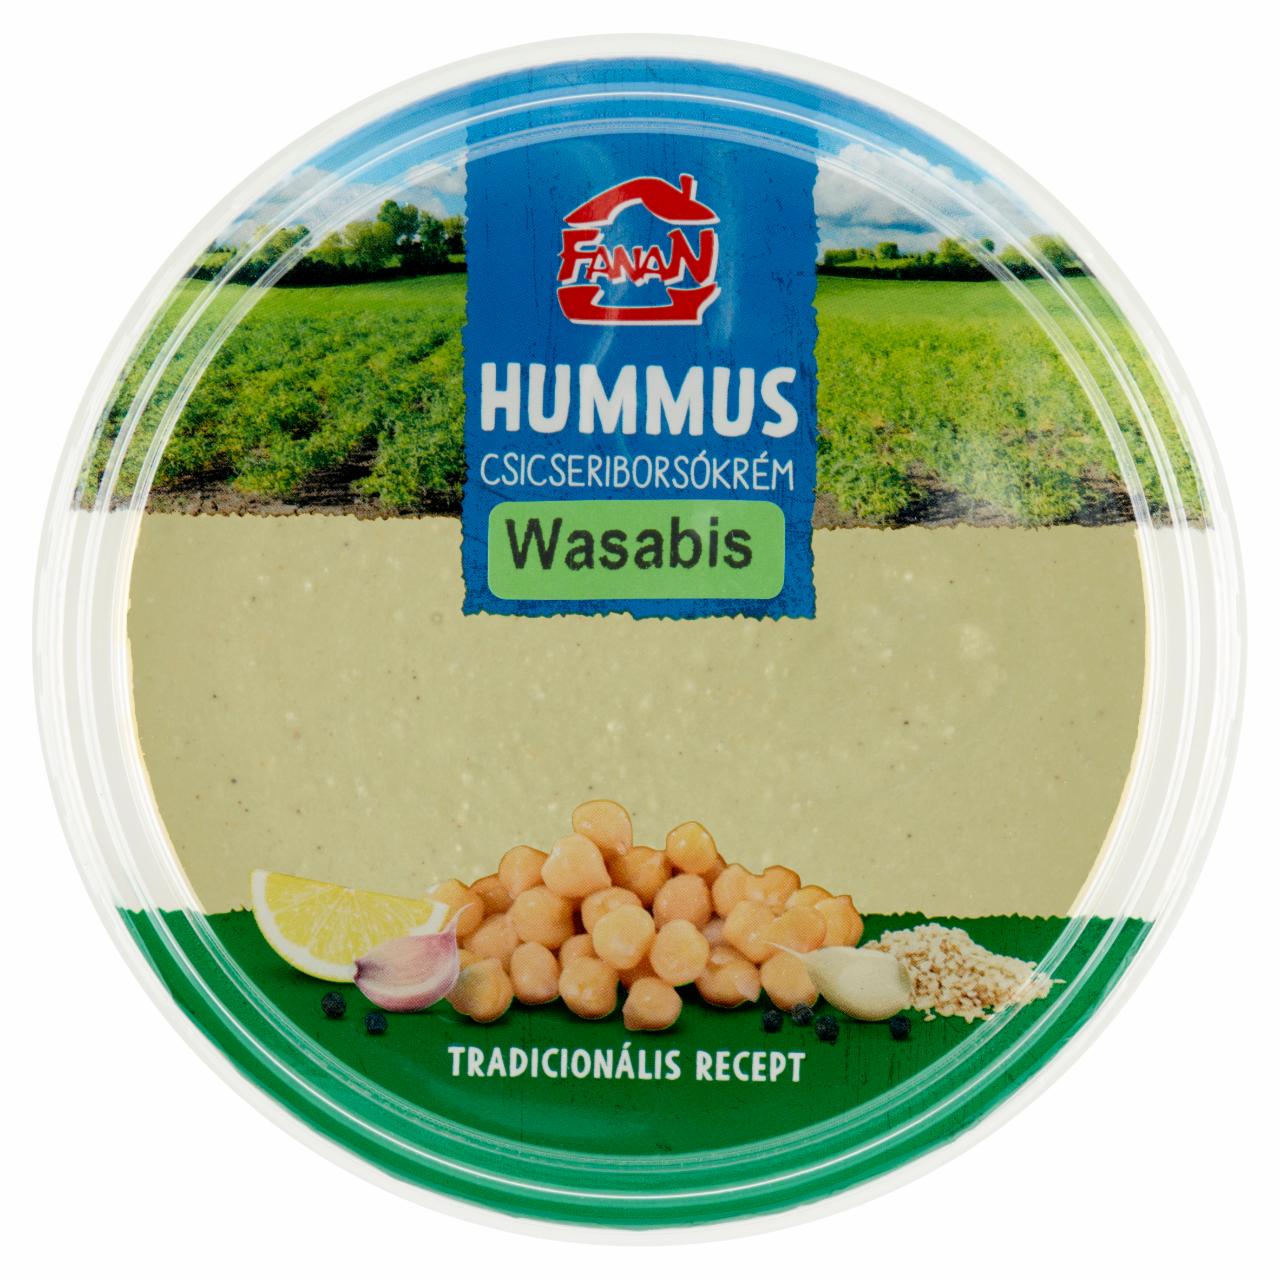 Képek - Fanan hummus wasabis csicseriborsó krém 250 g